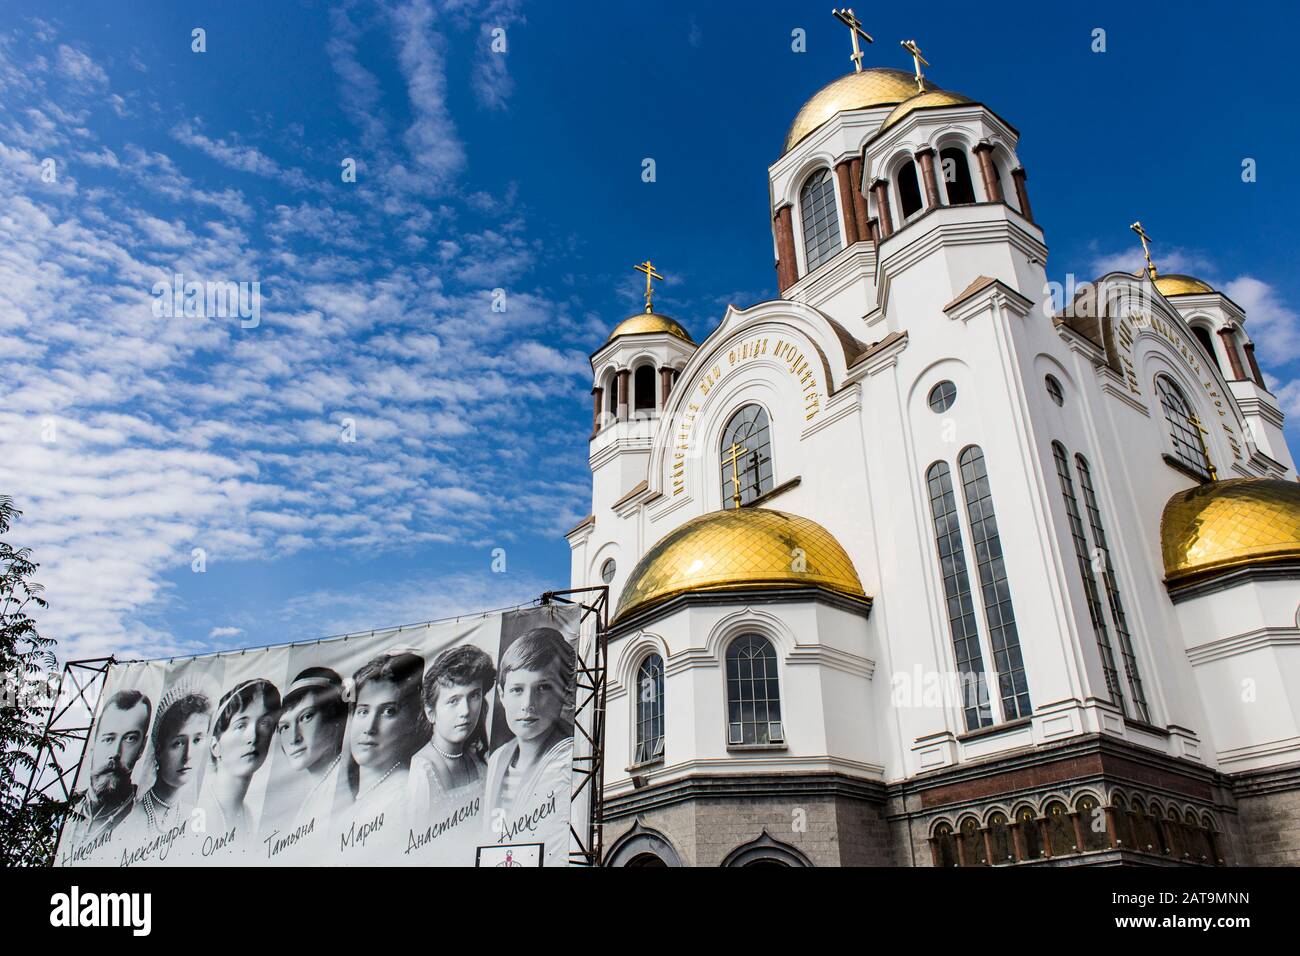 Die Blutkirche Zu Ehren der Allerheiligen Im russischen Land, wo Nikolaus II., der letzte Kaiser Russlands, und seine Familie erschossen wurden Stockfoto